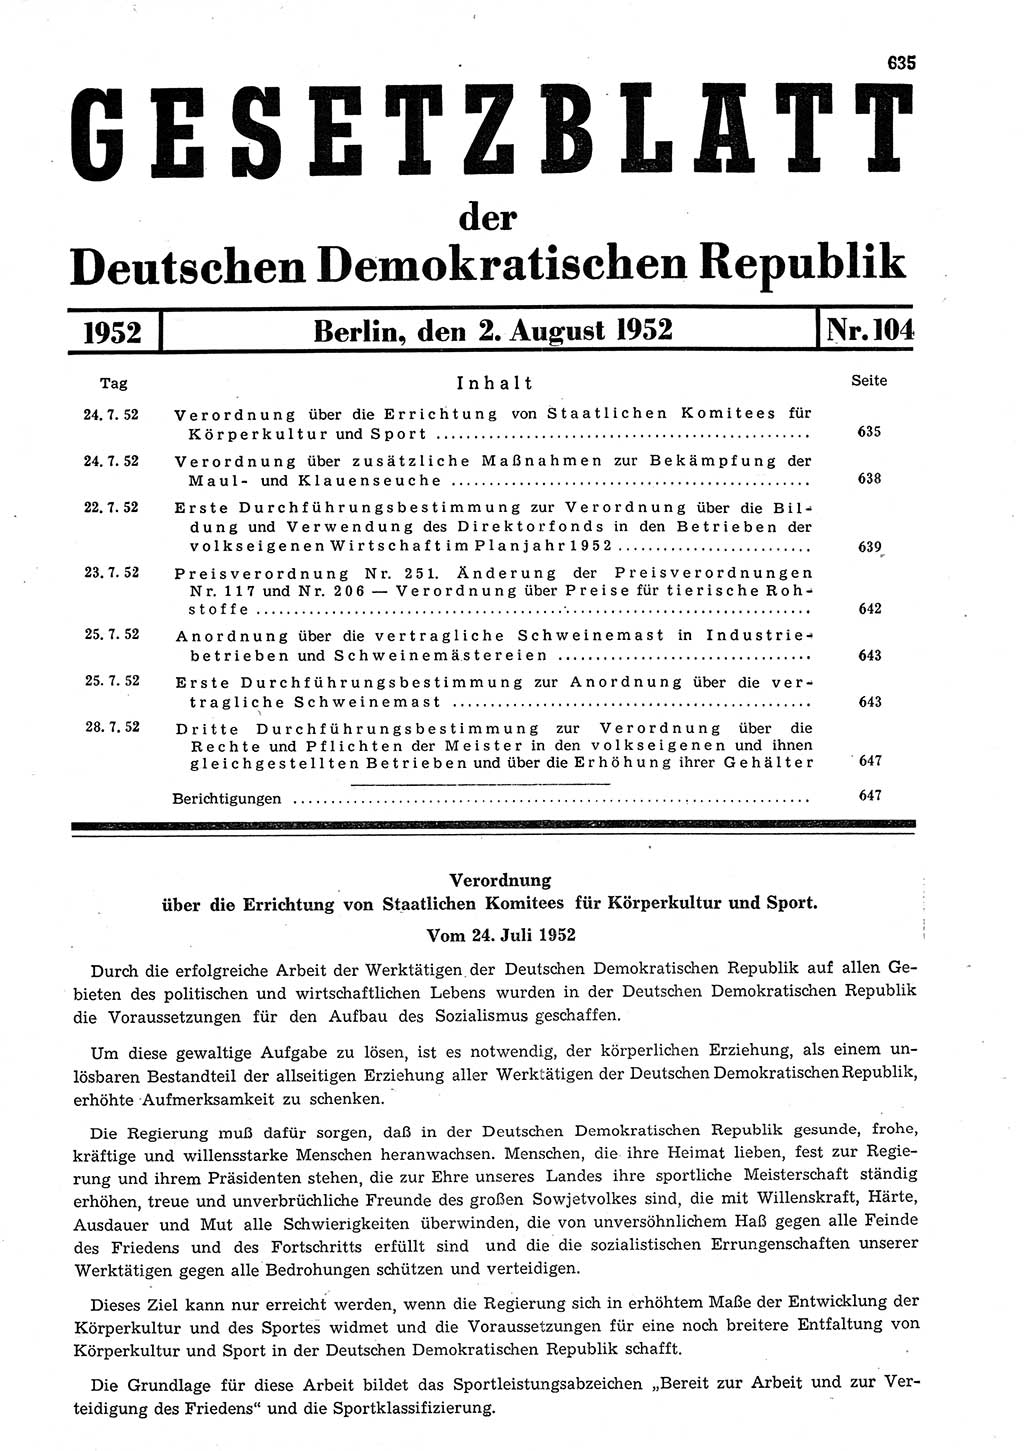 Gesetzblatt (GBl.) der Deutschen Demokratischen Republik (DDR) 1952, Seite 635 (GBl. DDR 1952, S. 635)